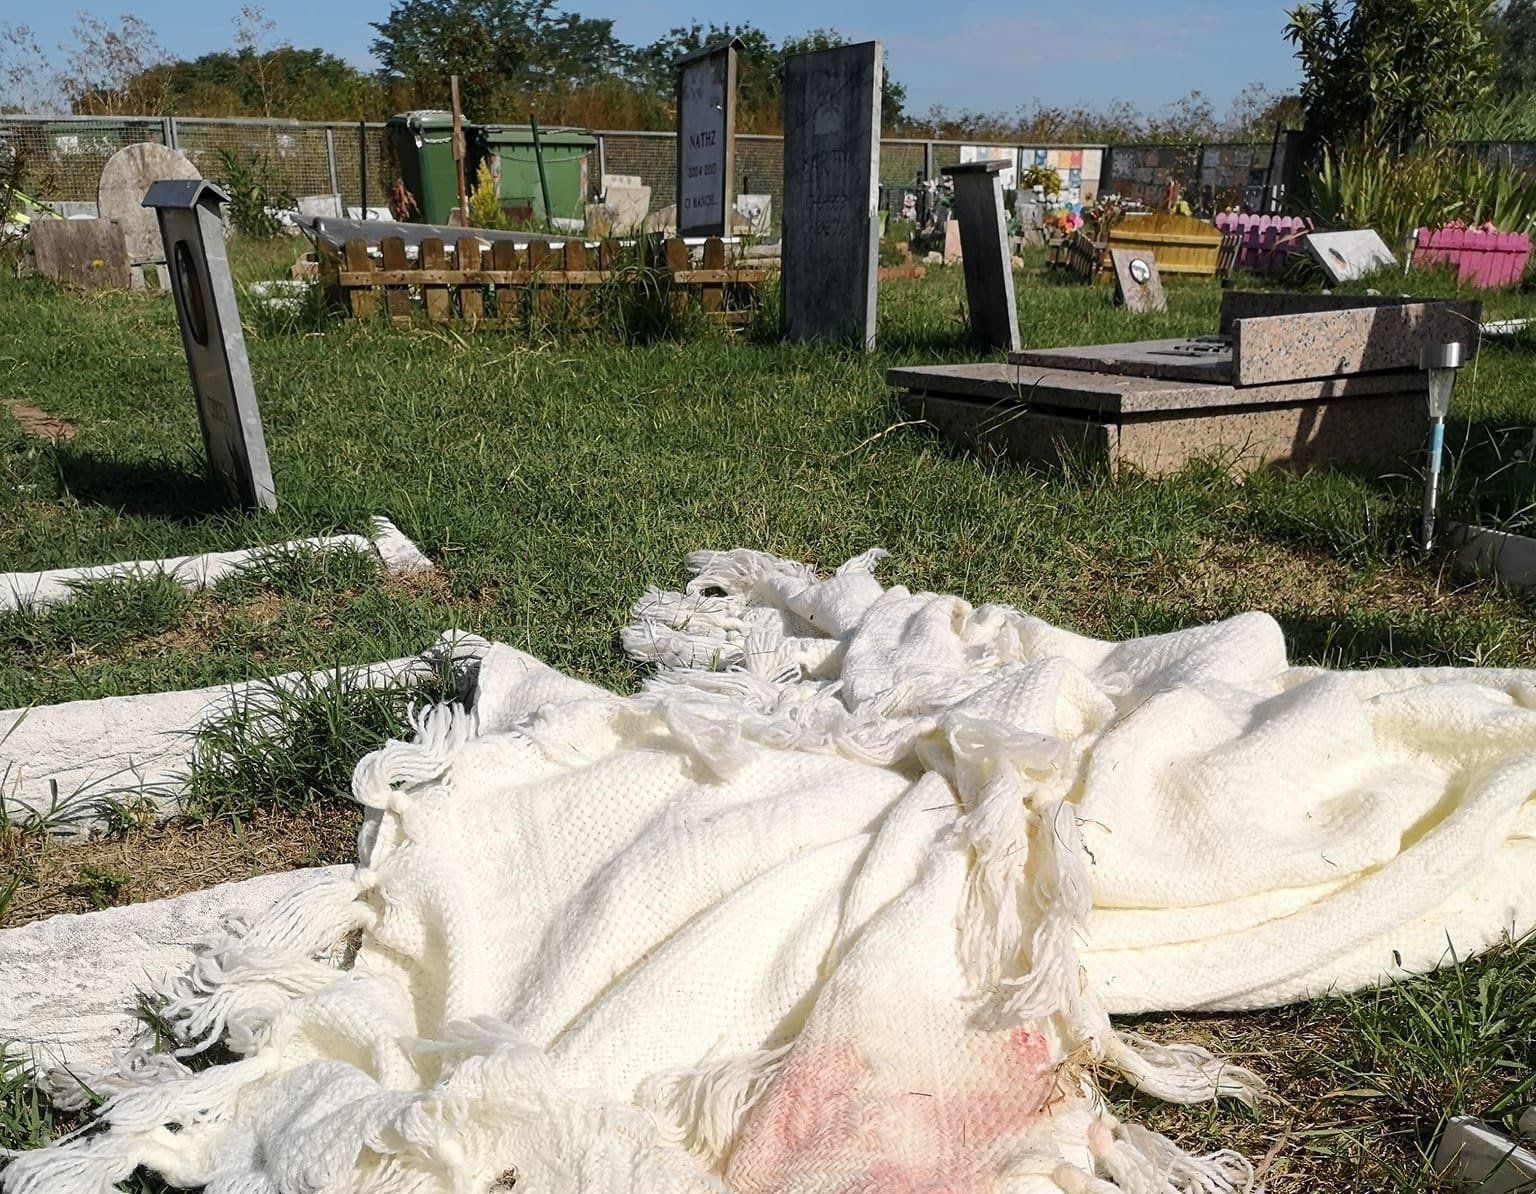 Cimiterino degli animali, lo sconforto dei volontari: “Siringhe e cocci ovunque, pensiamo di fermarci”